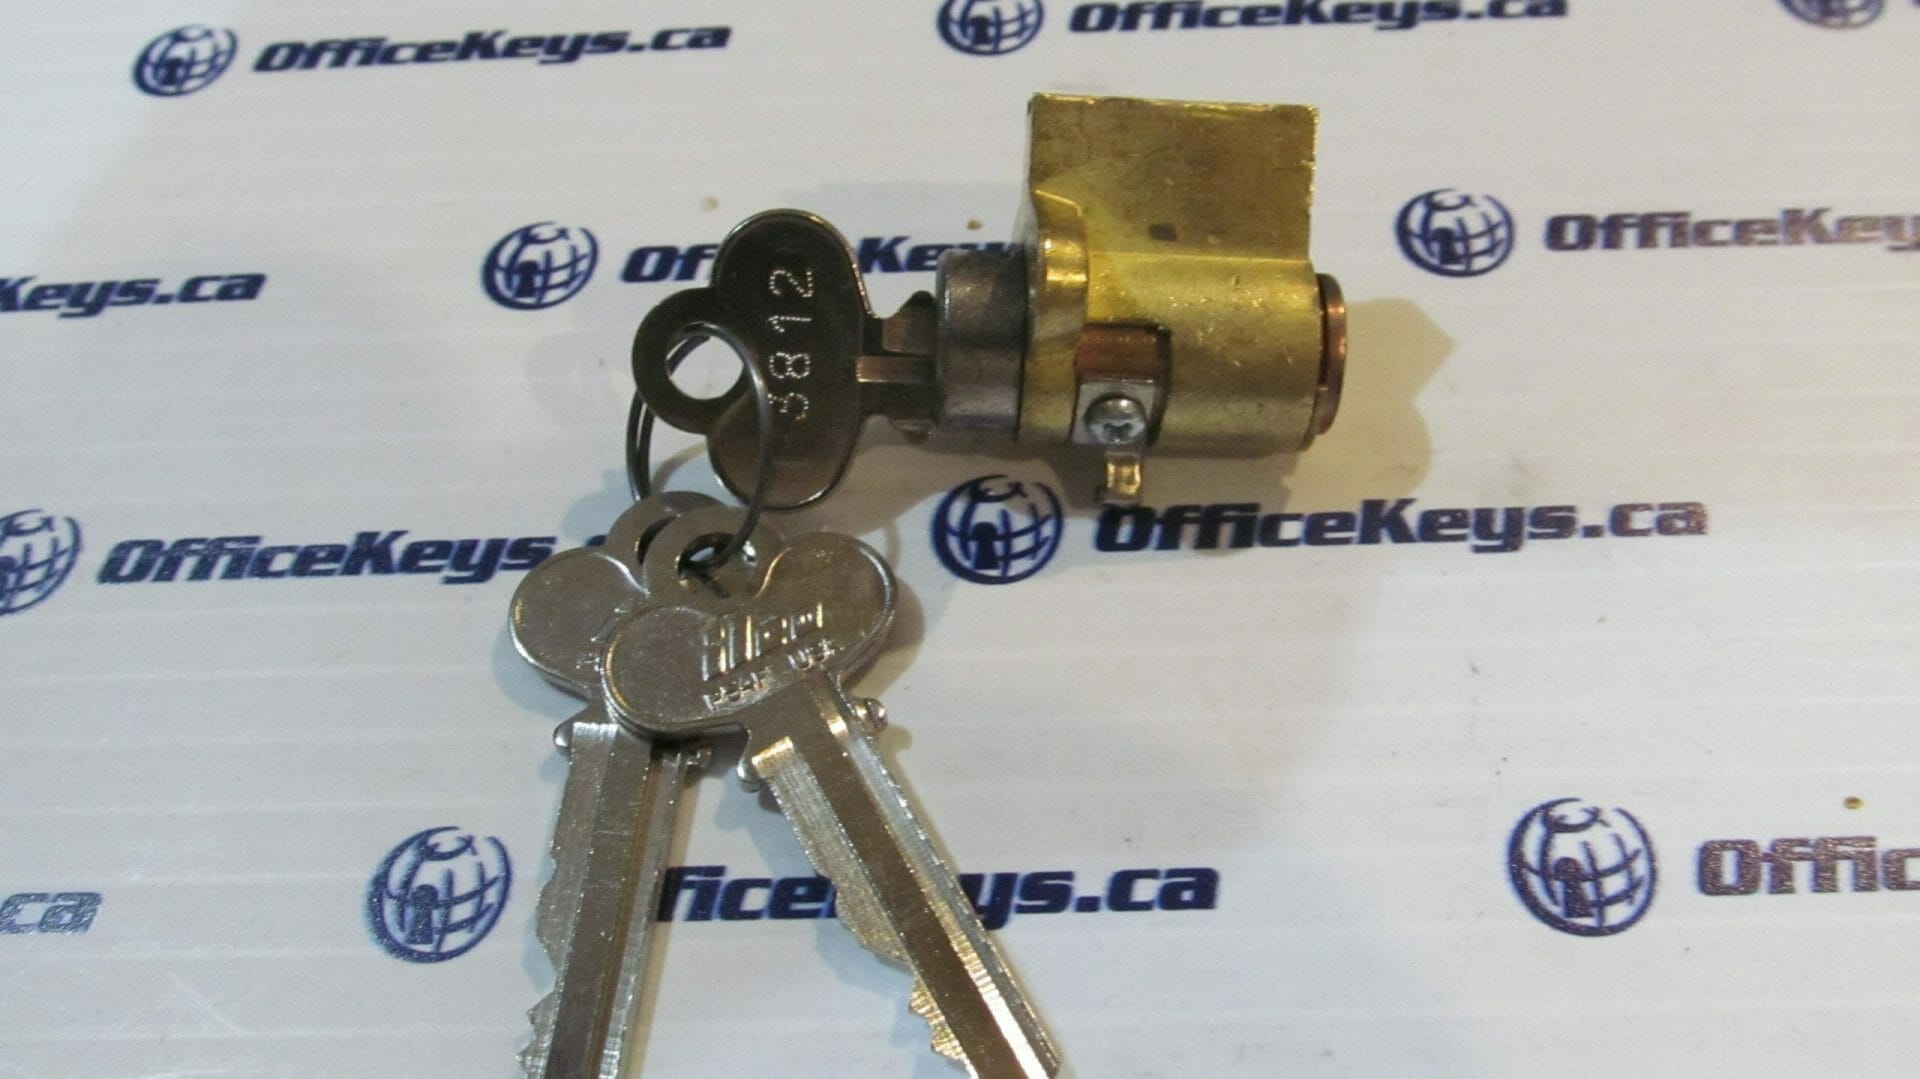 Capitol Lock 4096-14 Canadian Mailbox Lock